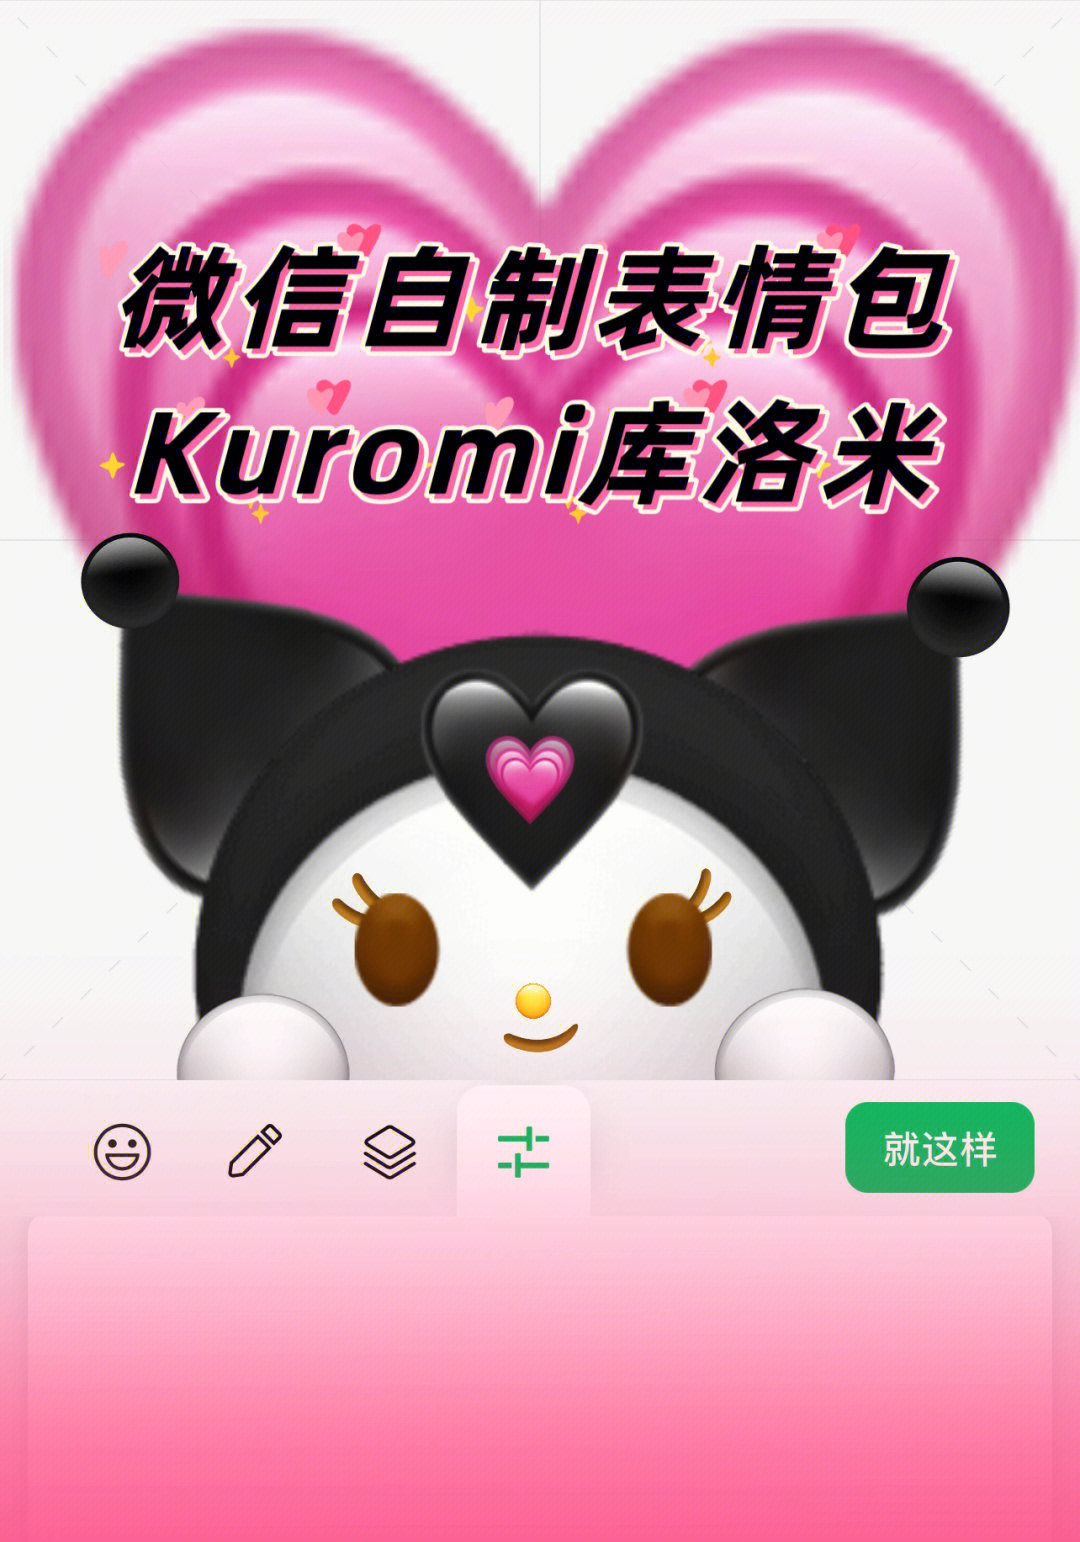 微信自制表情包kuromi库洛米教程